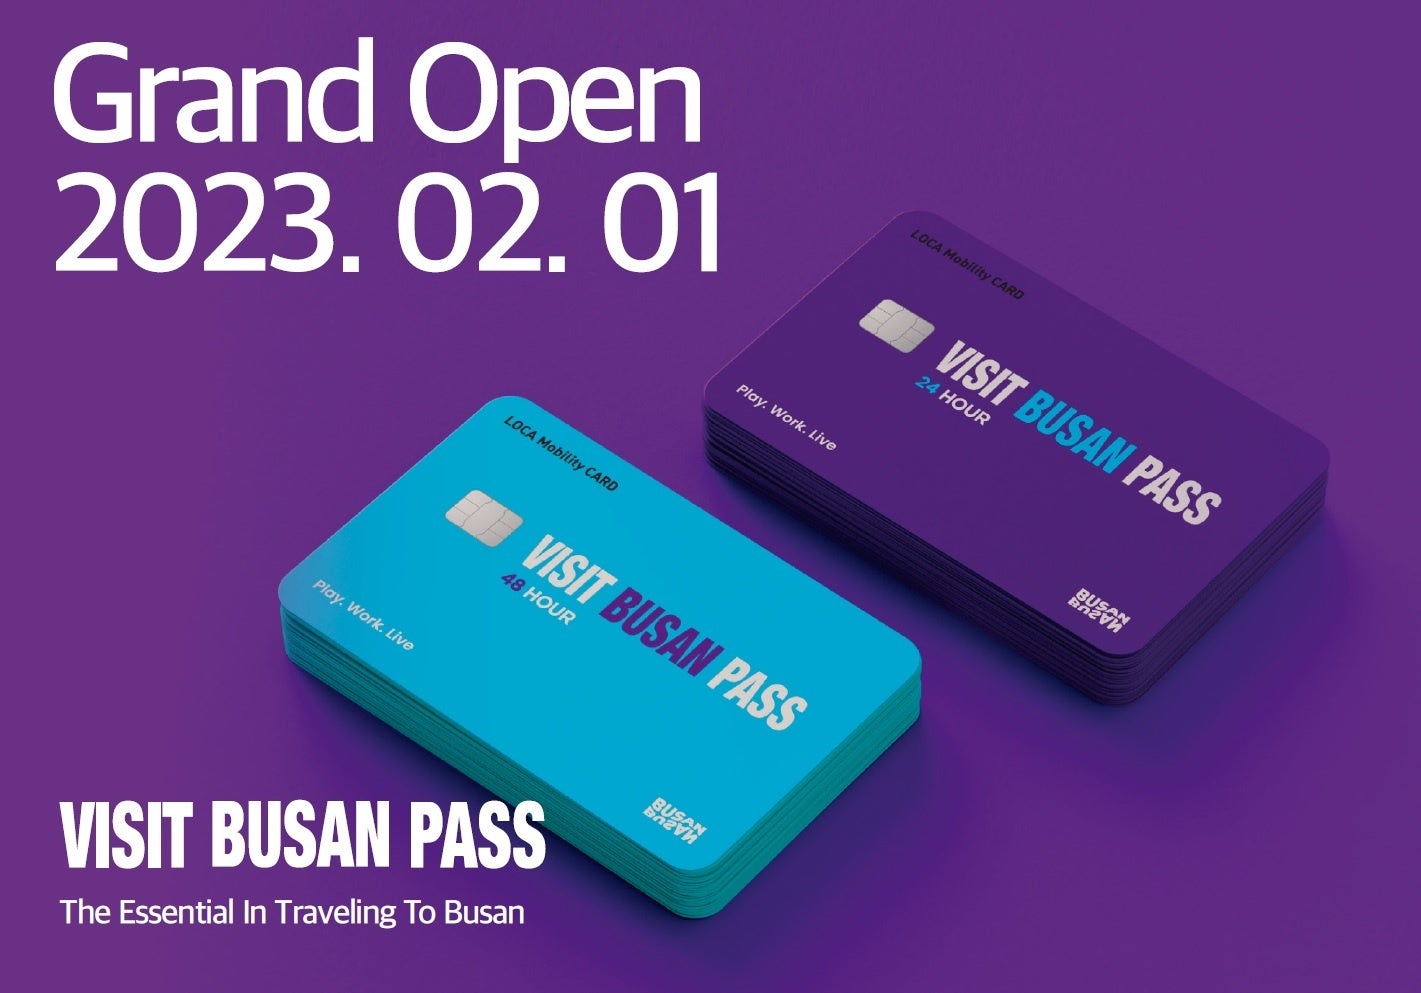 韓国への旅行者向けの「VISIT BUSAN PAS」を2月に発売